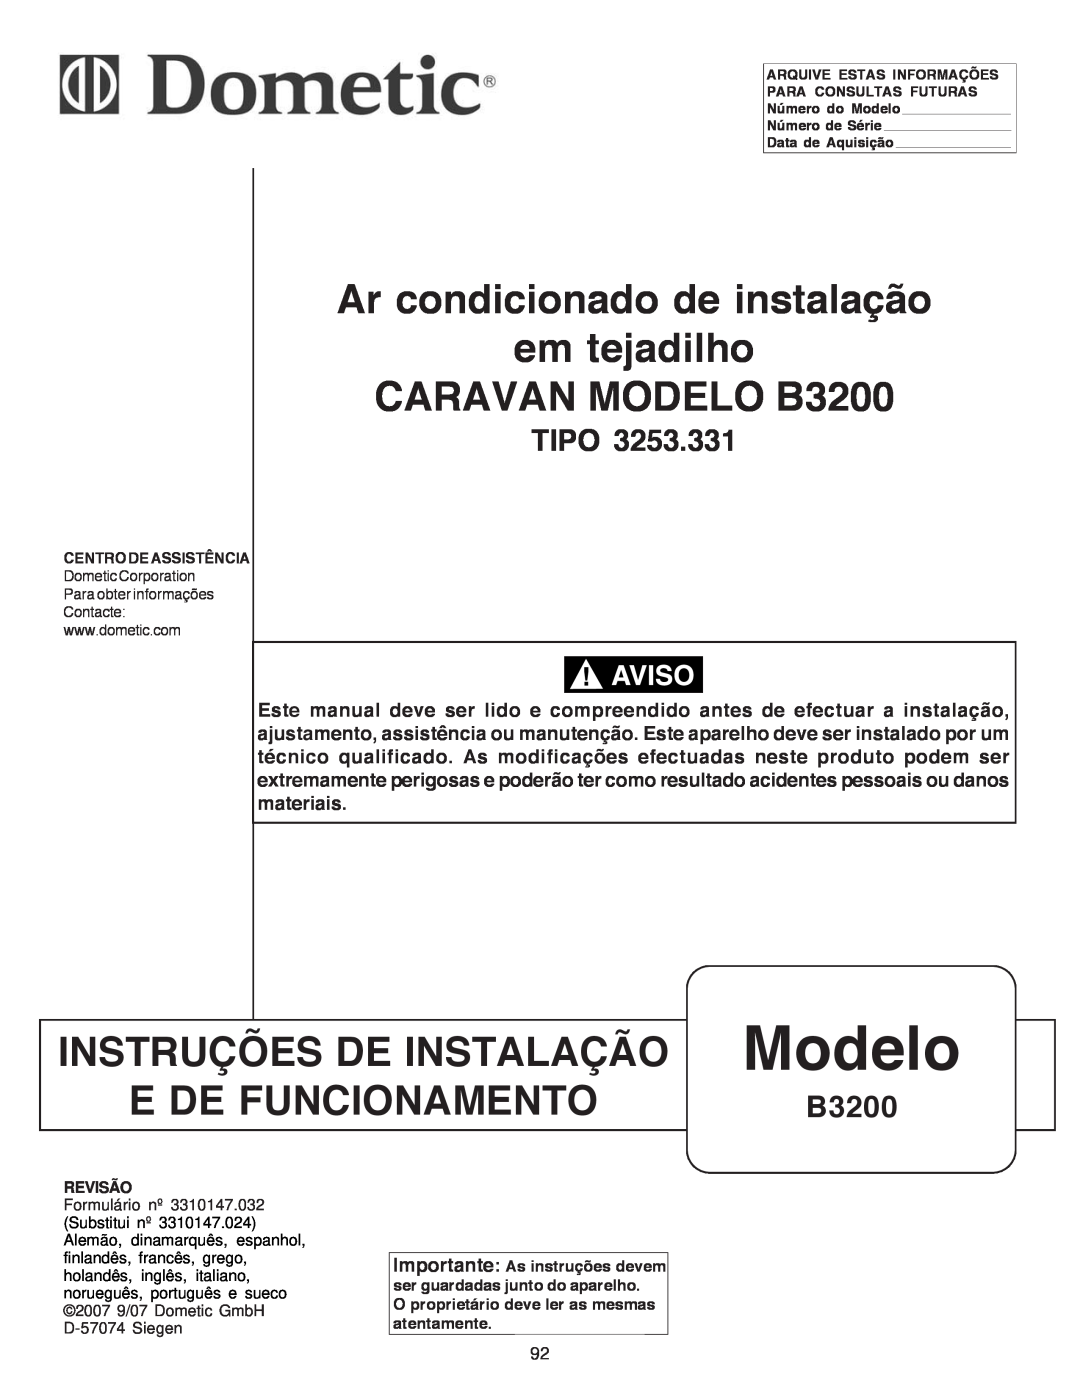 Dometic manual Modelo, Ar condicionado de instalação em tejadilho, CARAVAN MODELO B3200, Instruções De Instalação, Tipo 